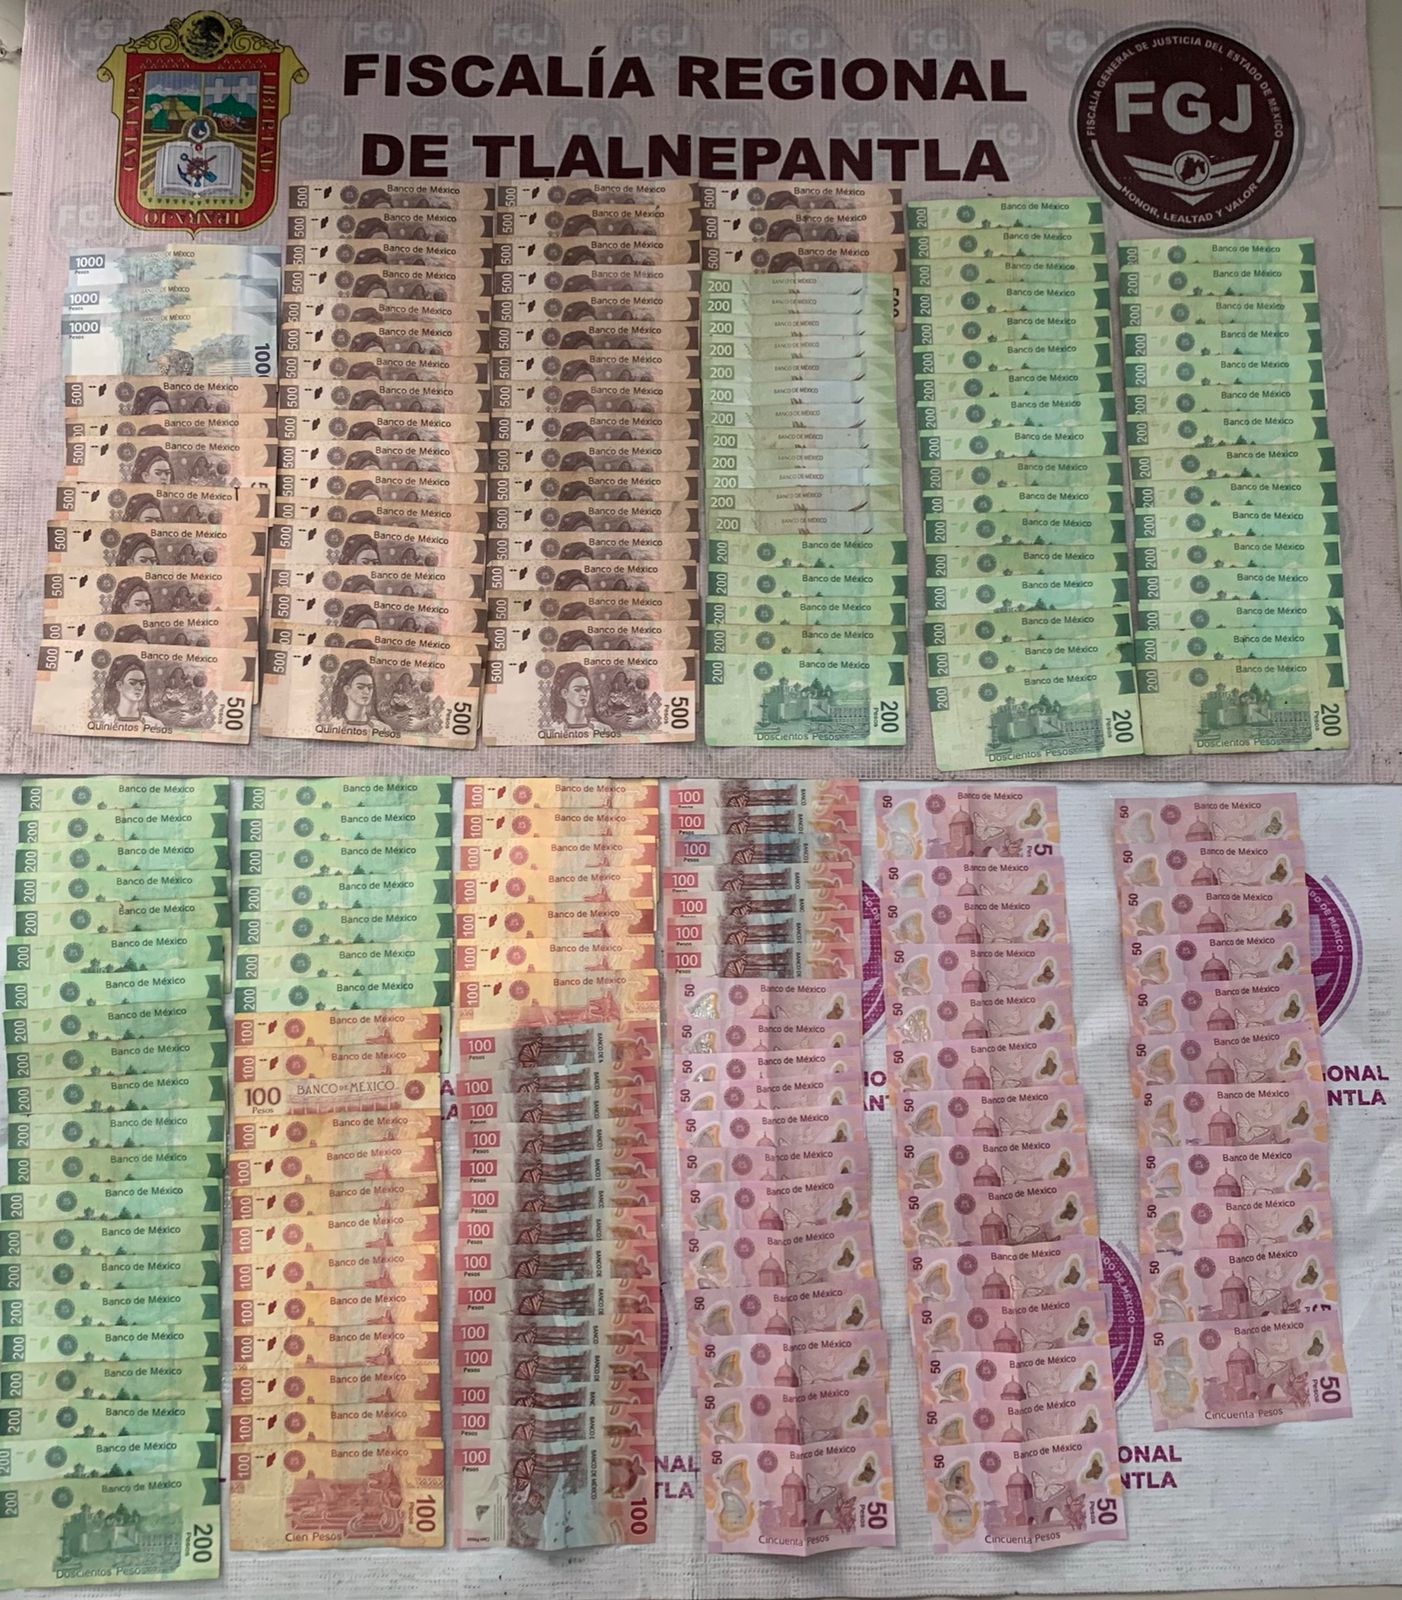 Procesan a dos probables extorsionadores detenidos en Tlalnepantla